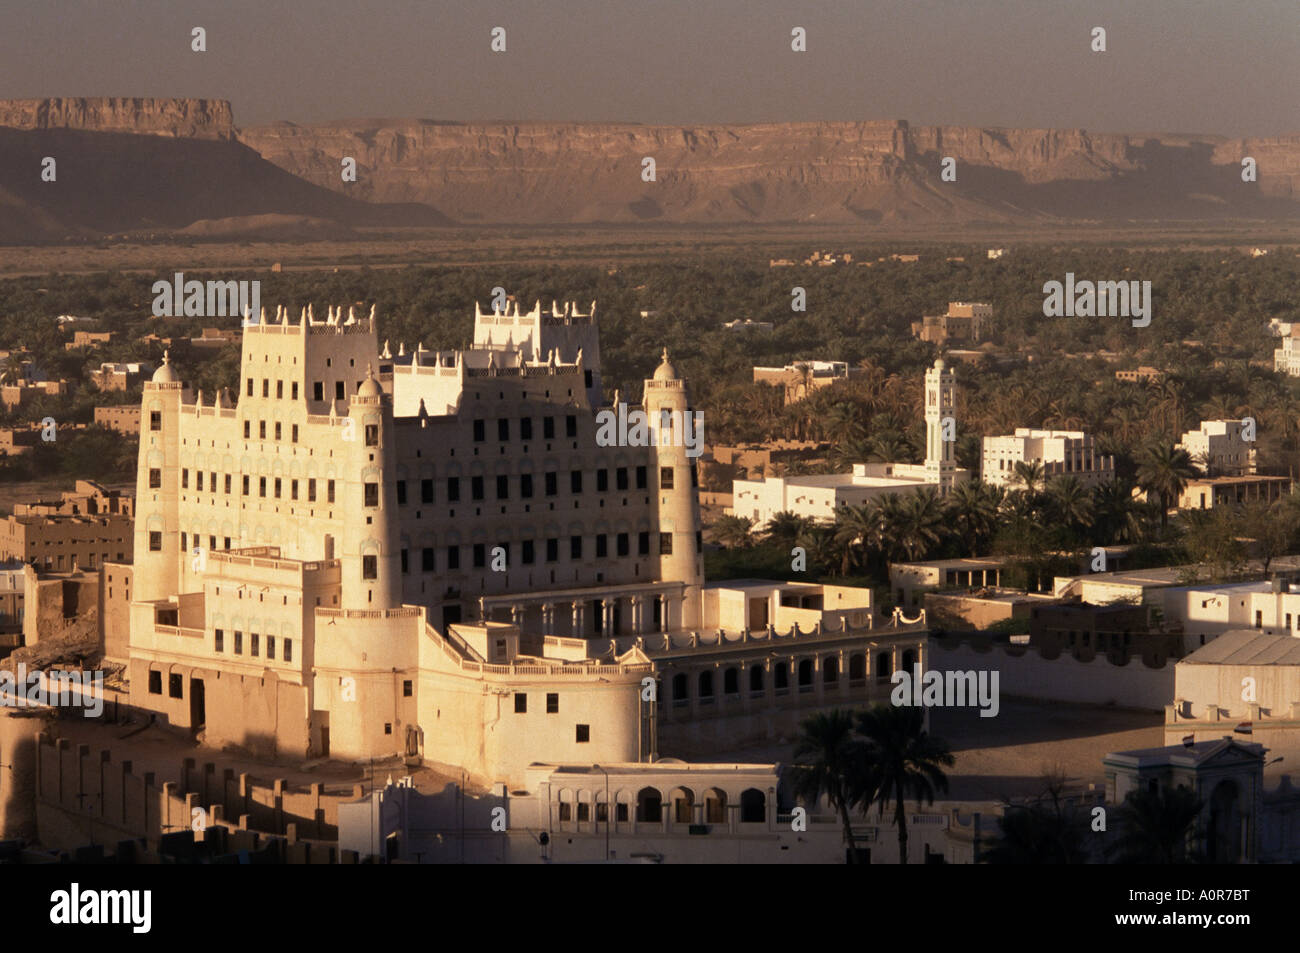 Sultan s Palace und sagen un Dorf Wadi Hadhramawt Valley South Yemen Jemen Nahost Stockfoto